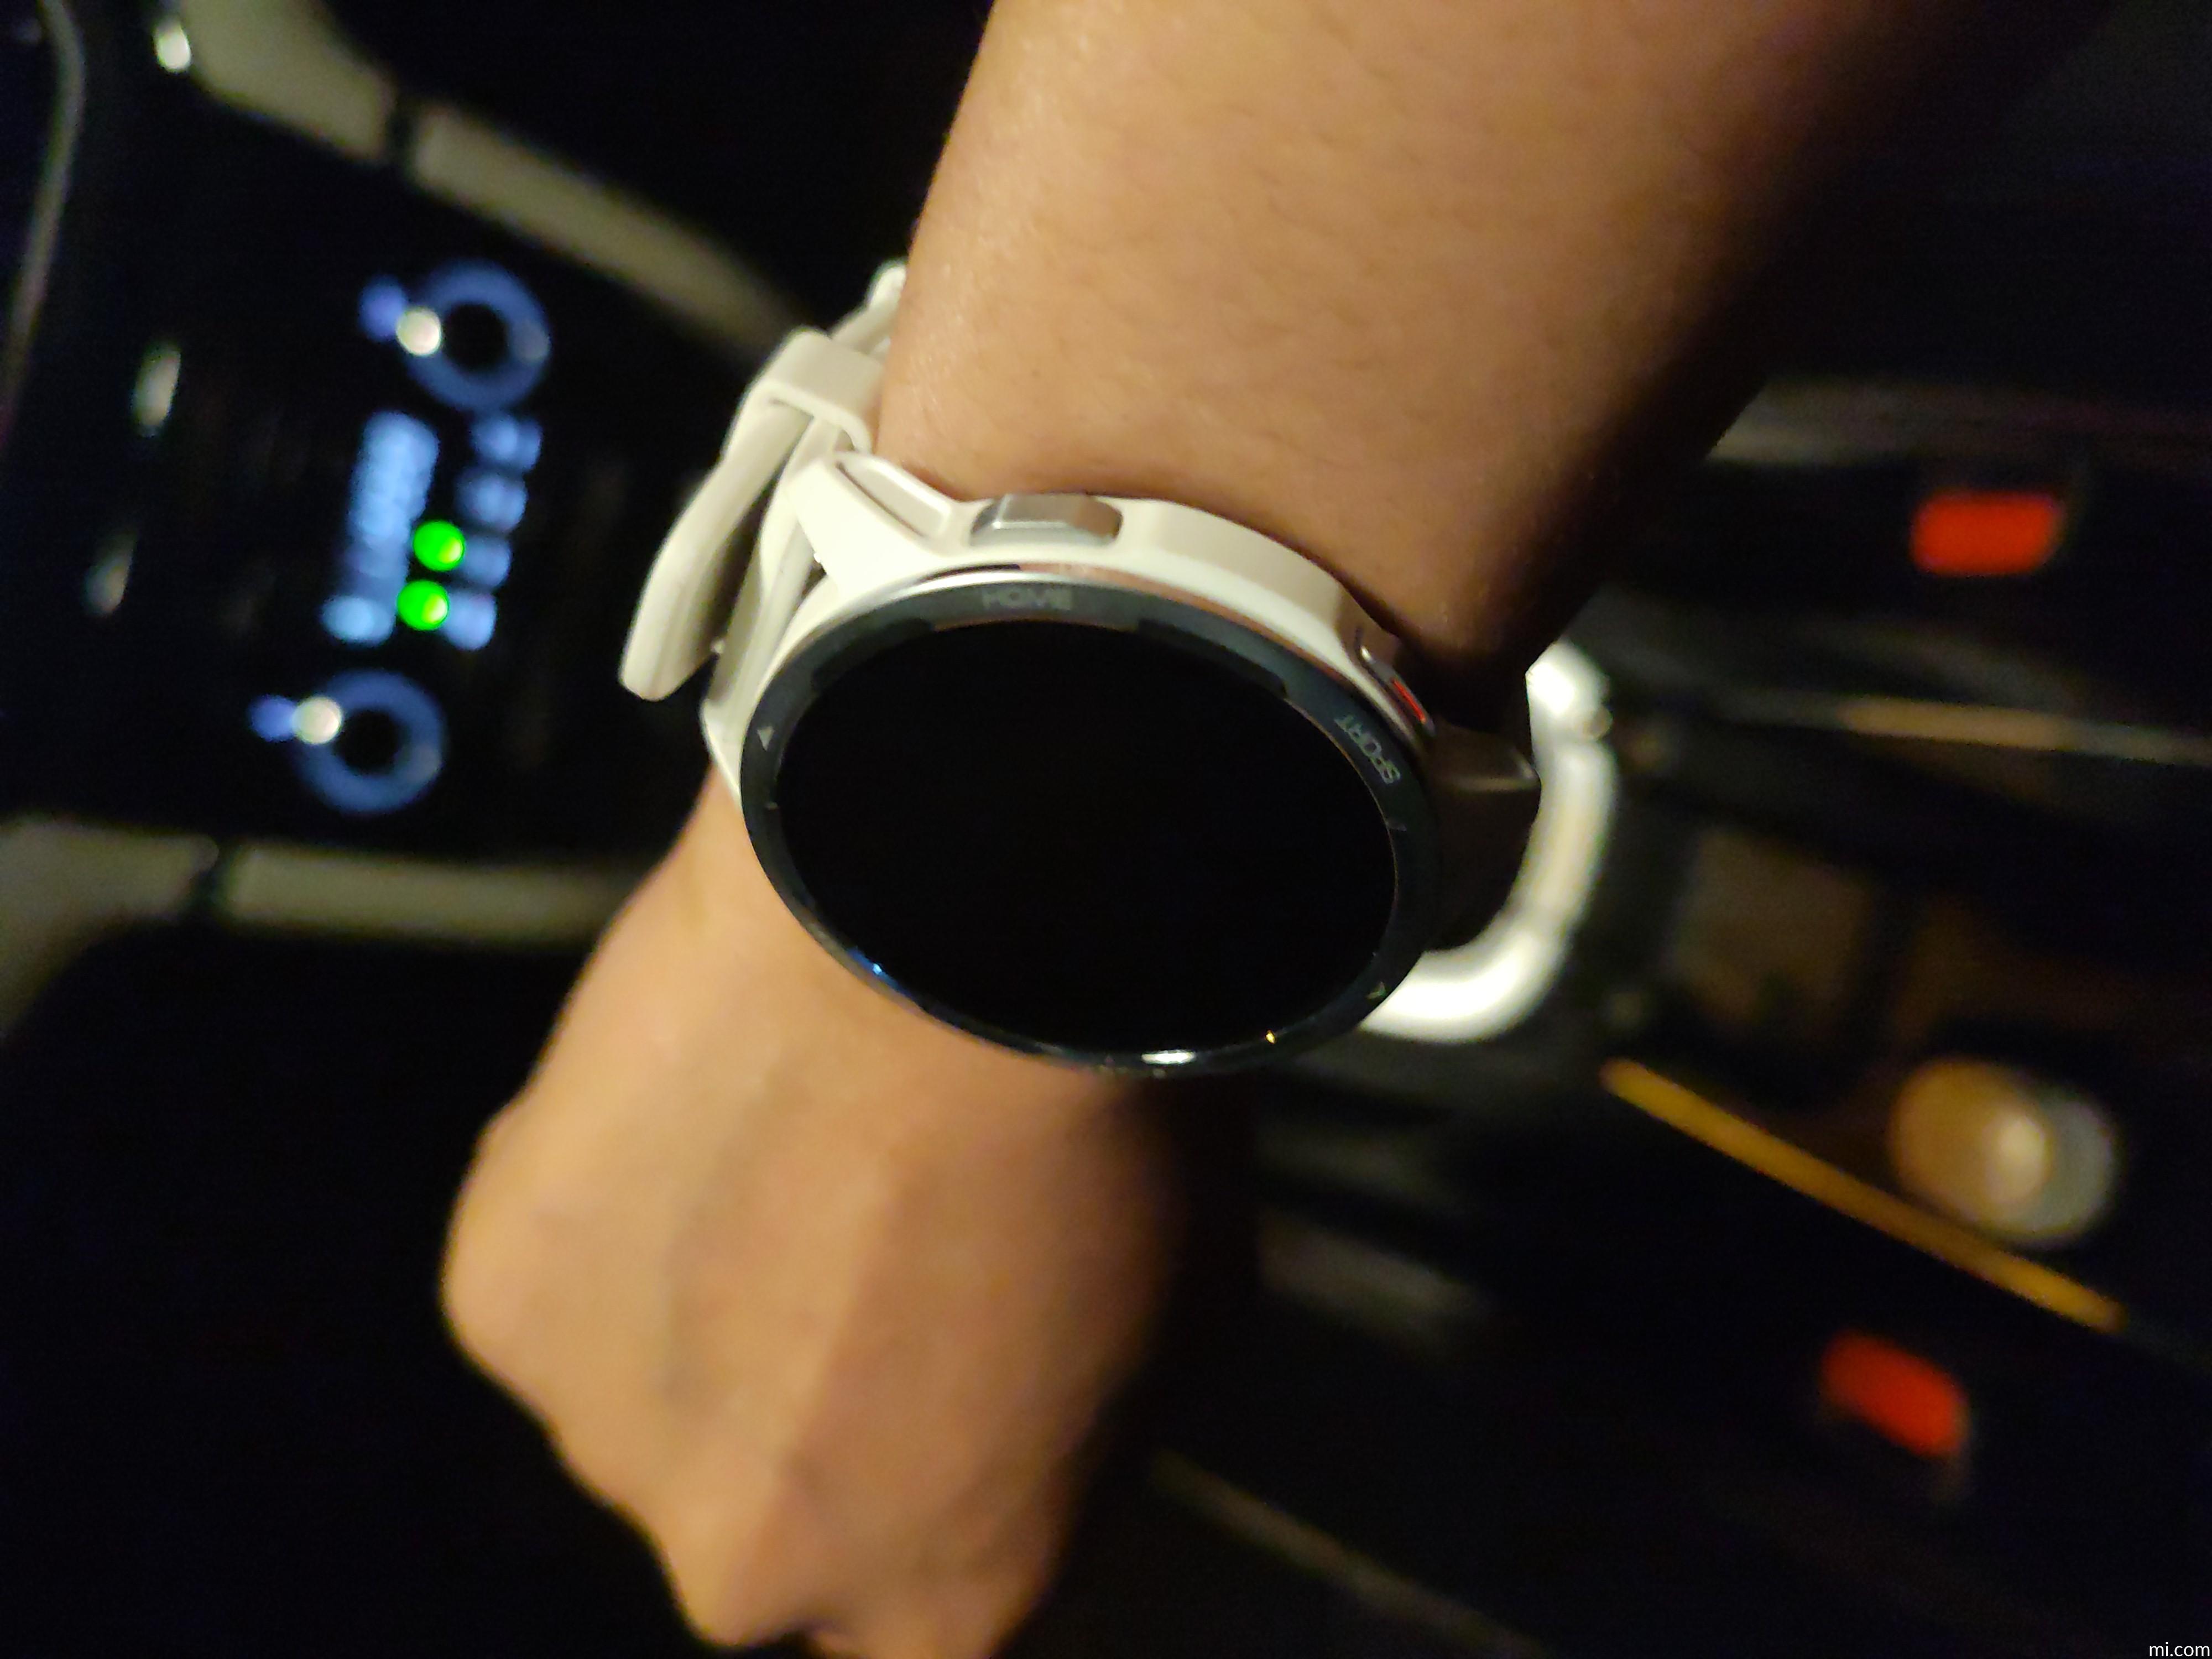 Smartwatch Xiaomi Watch S1 Active GL Negro